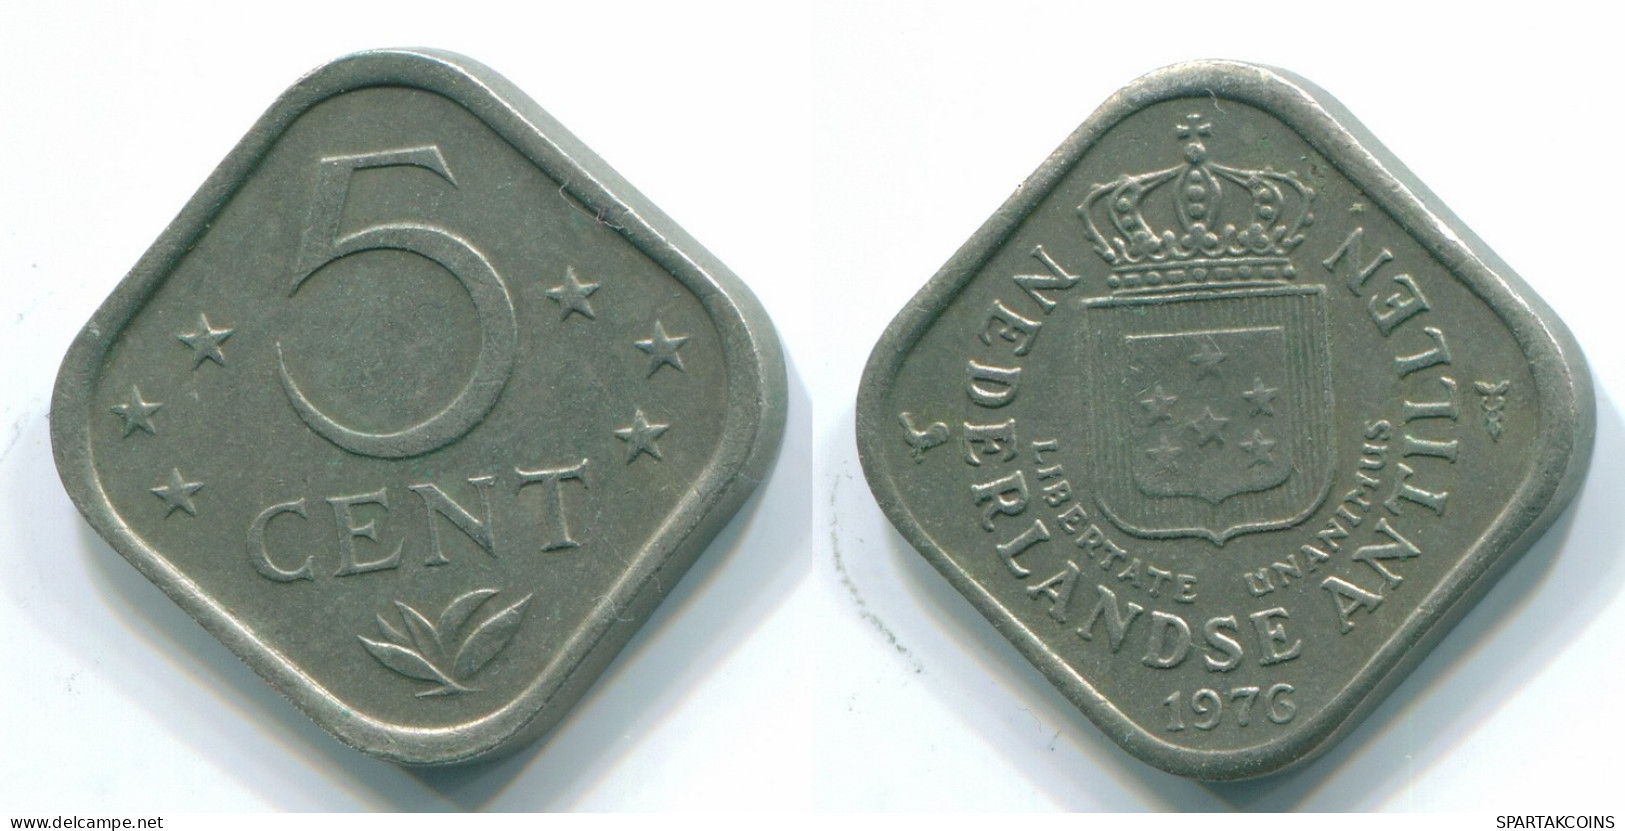 5 CENTS 1976 NETHERLANDS ANTILLES Nickel Colonial Coin #S12269.U.A - Niederländische Antillen